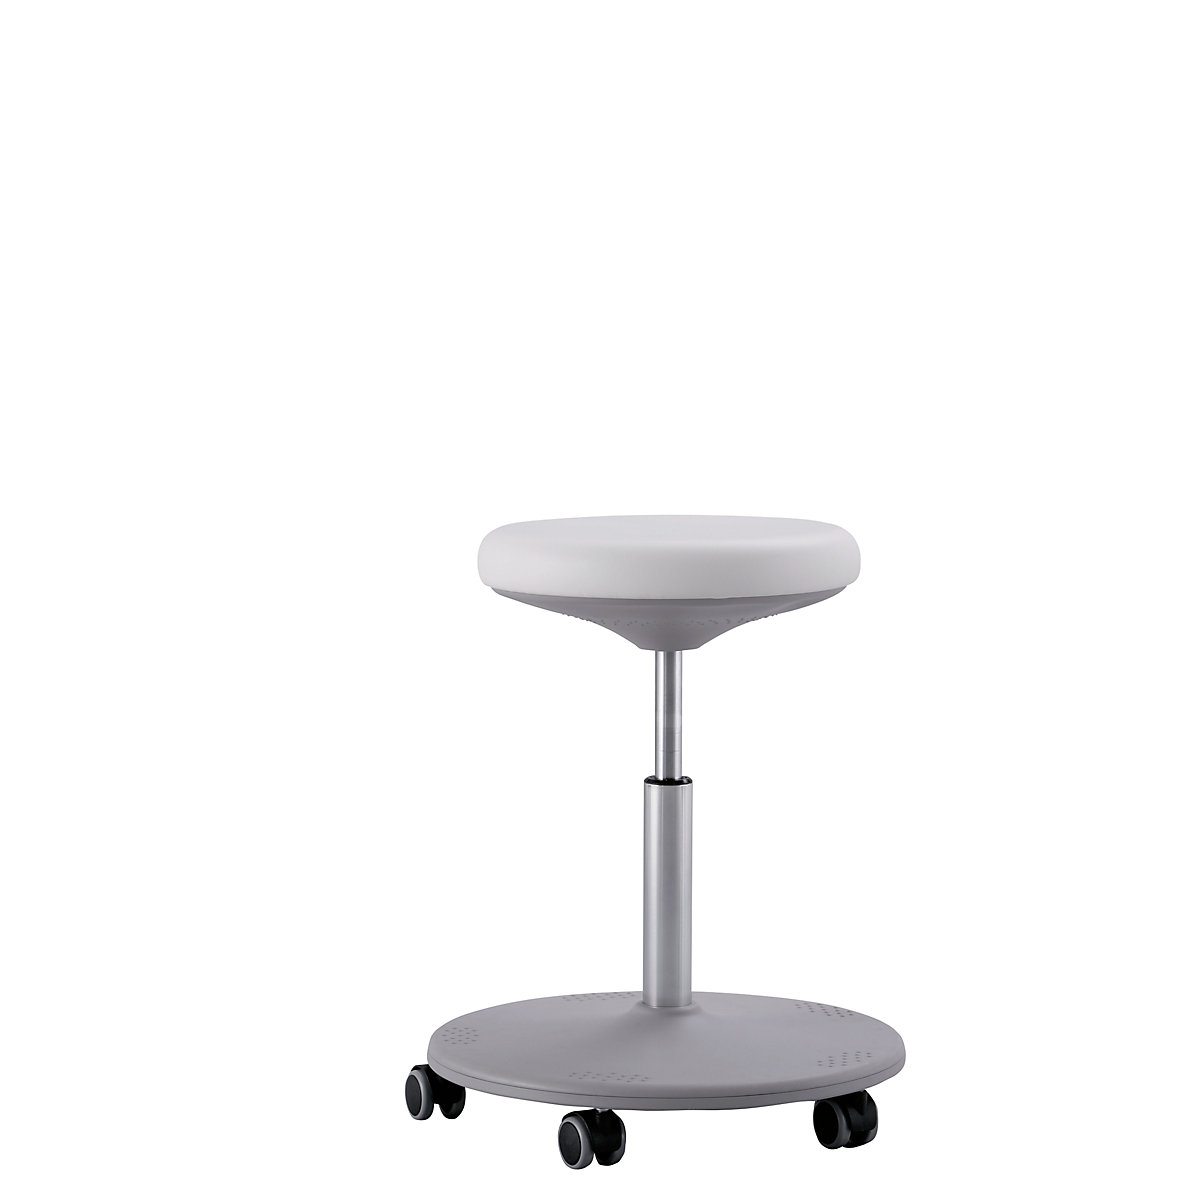 Pracovní stolička pro laboratoře, rozsah přestavování výšky 460 – 650 mm – bimos